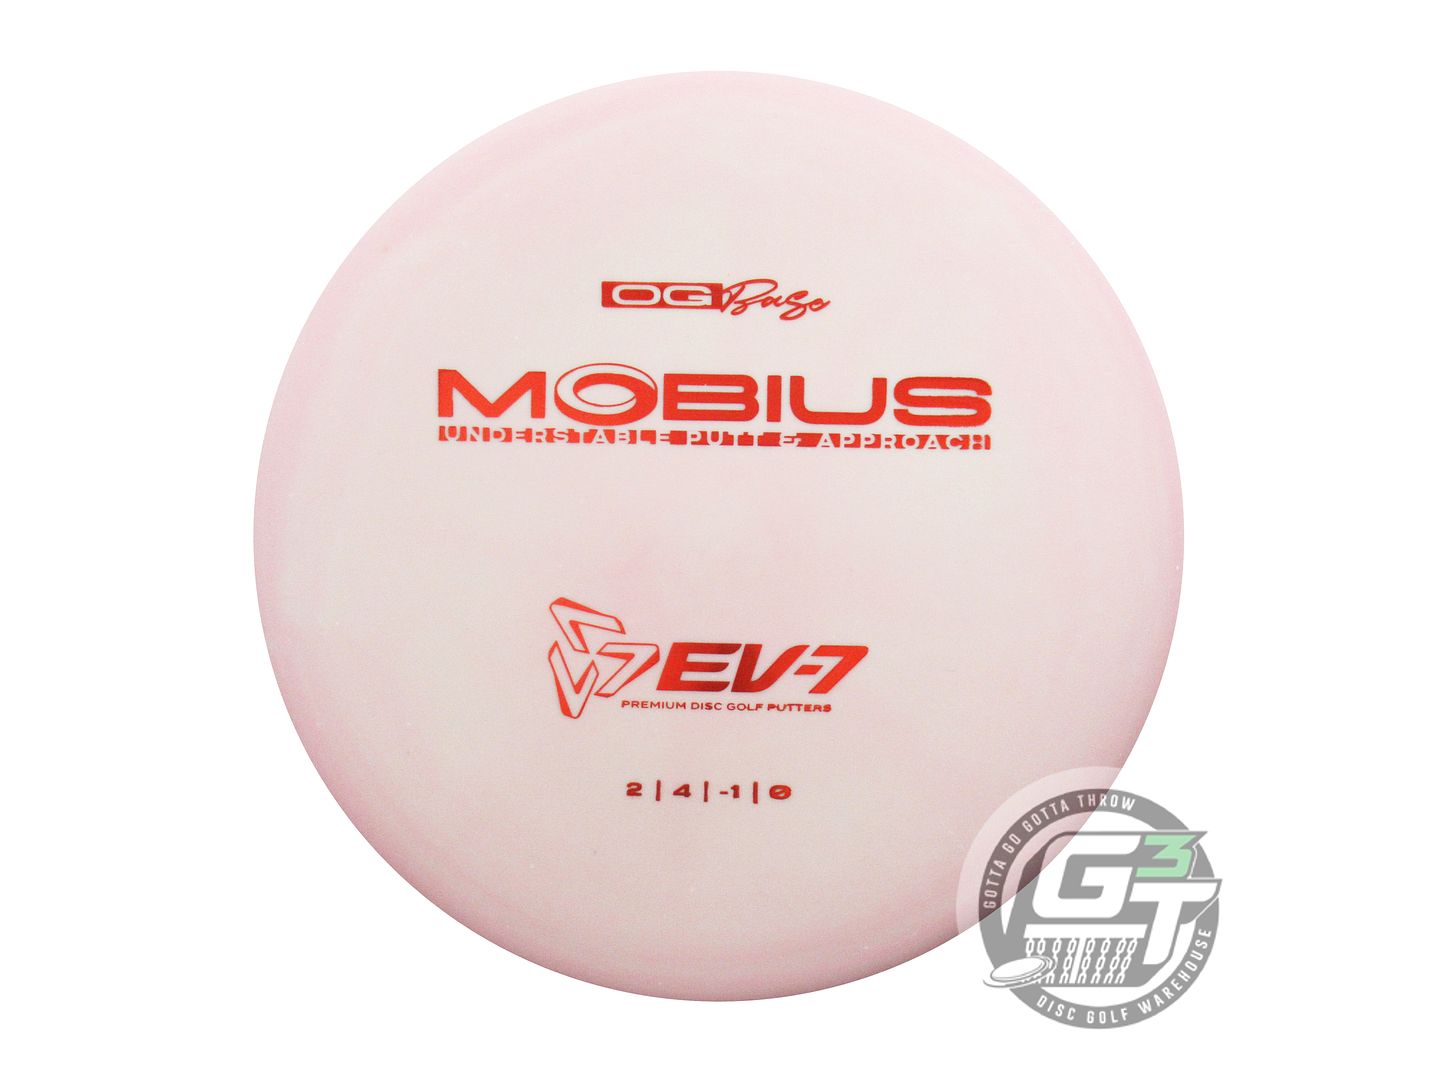 EV-7 OG Base Mobius Putter Golf Disc (Individually Listed)